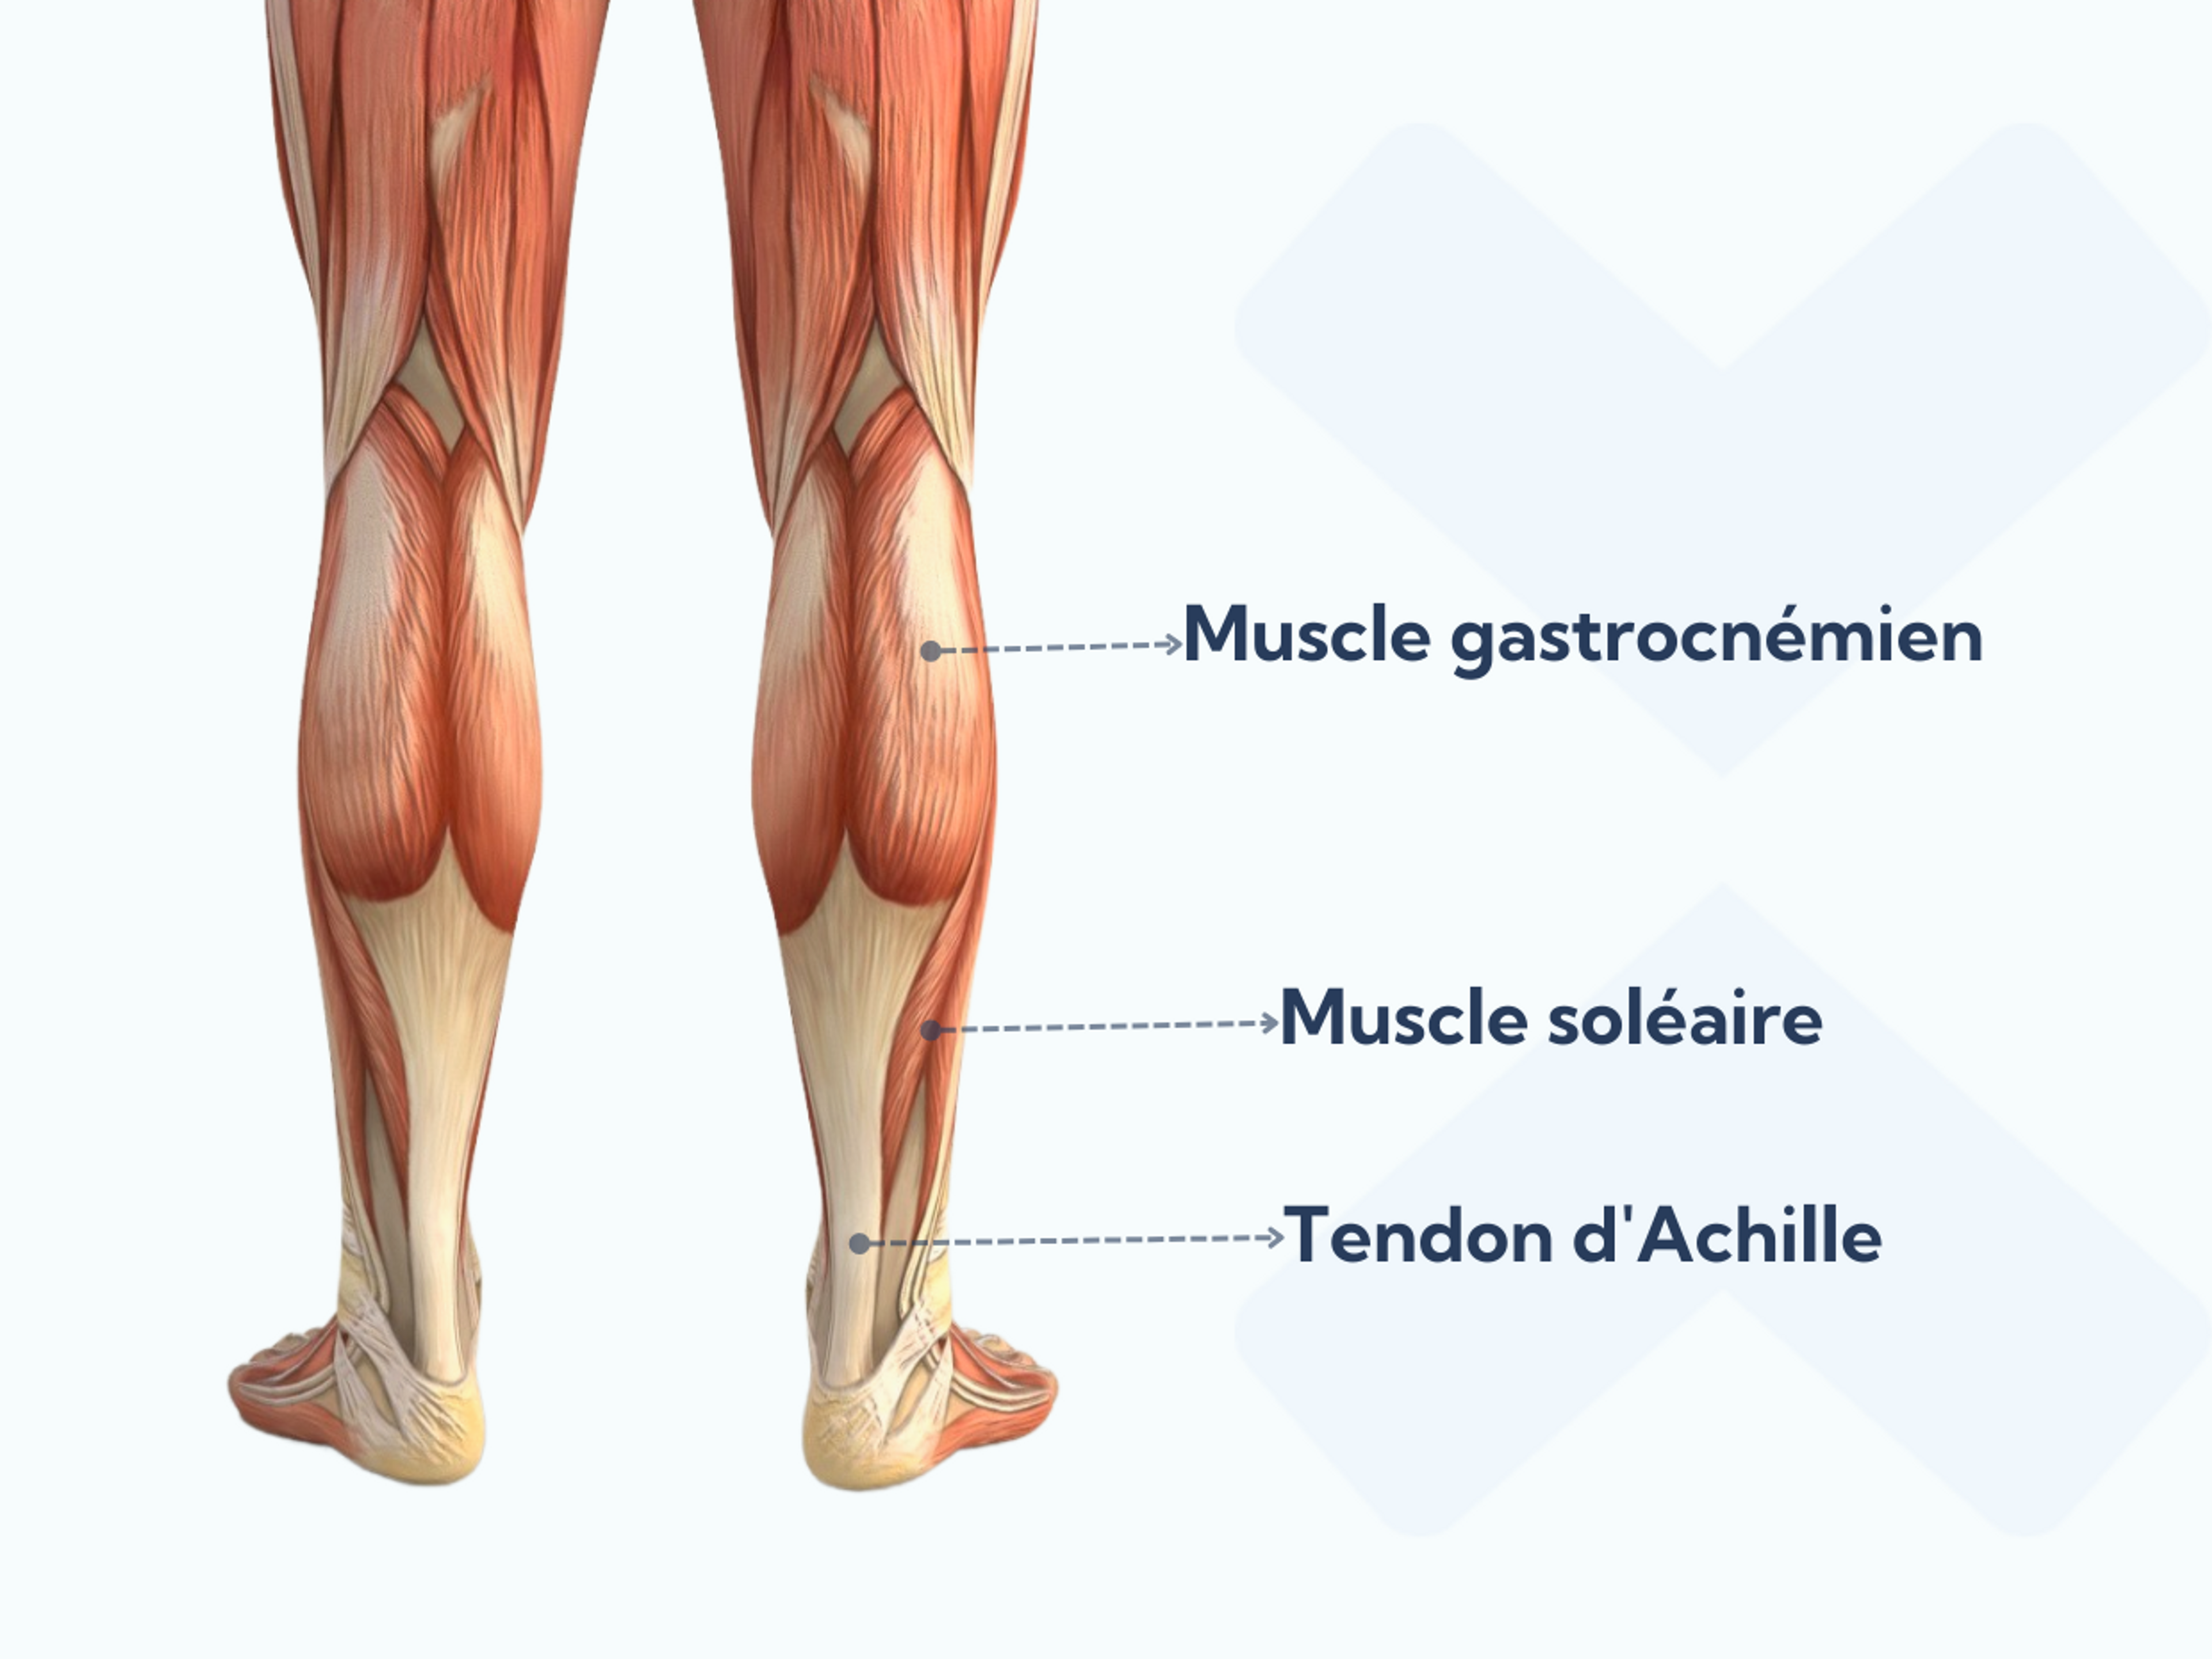 Anatomie des muscles du mollet et du tendon d'Achille